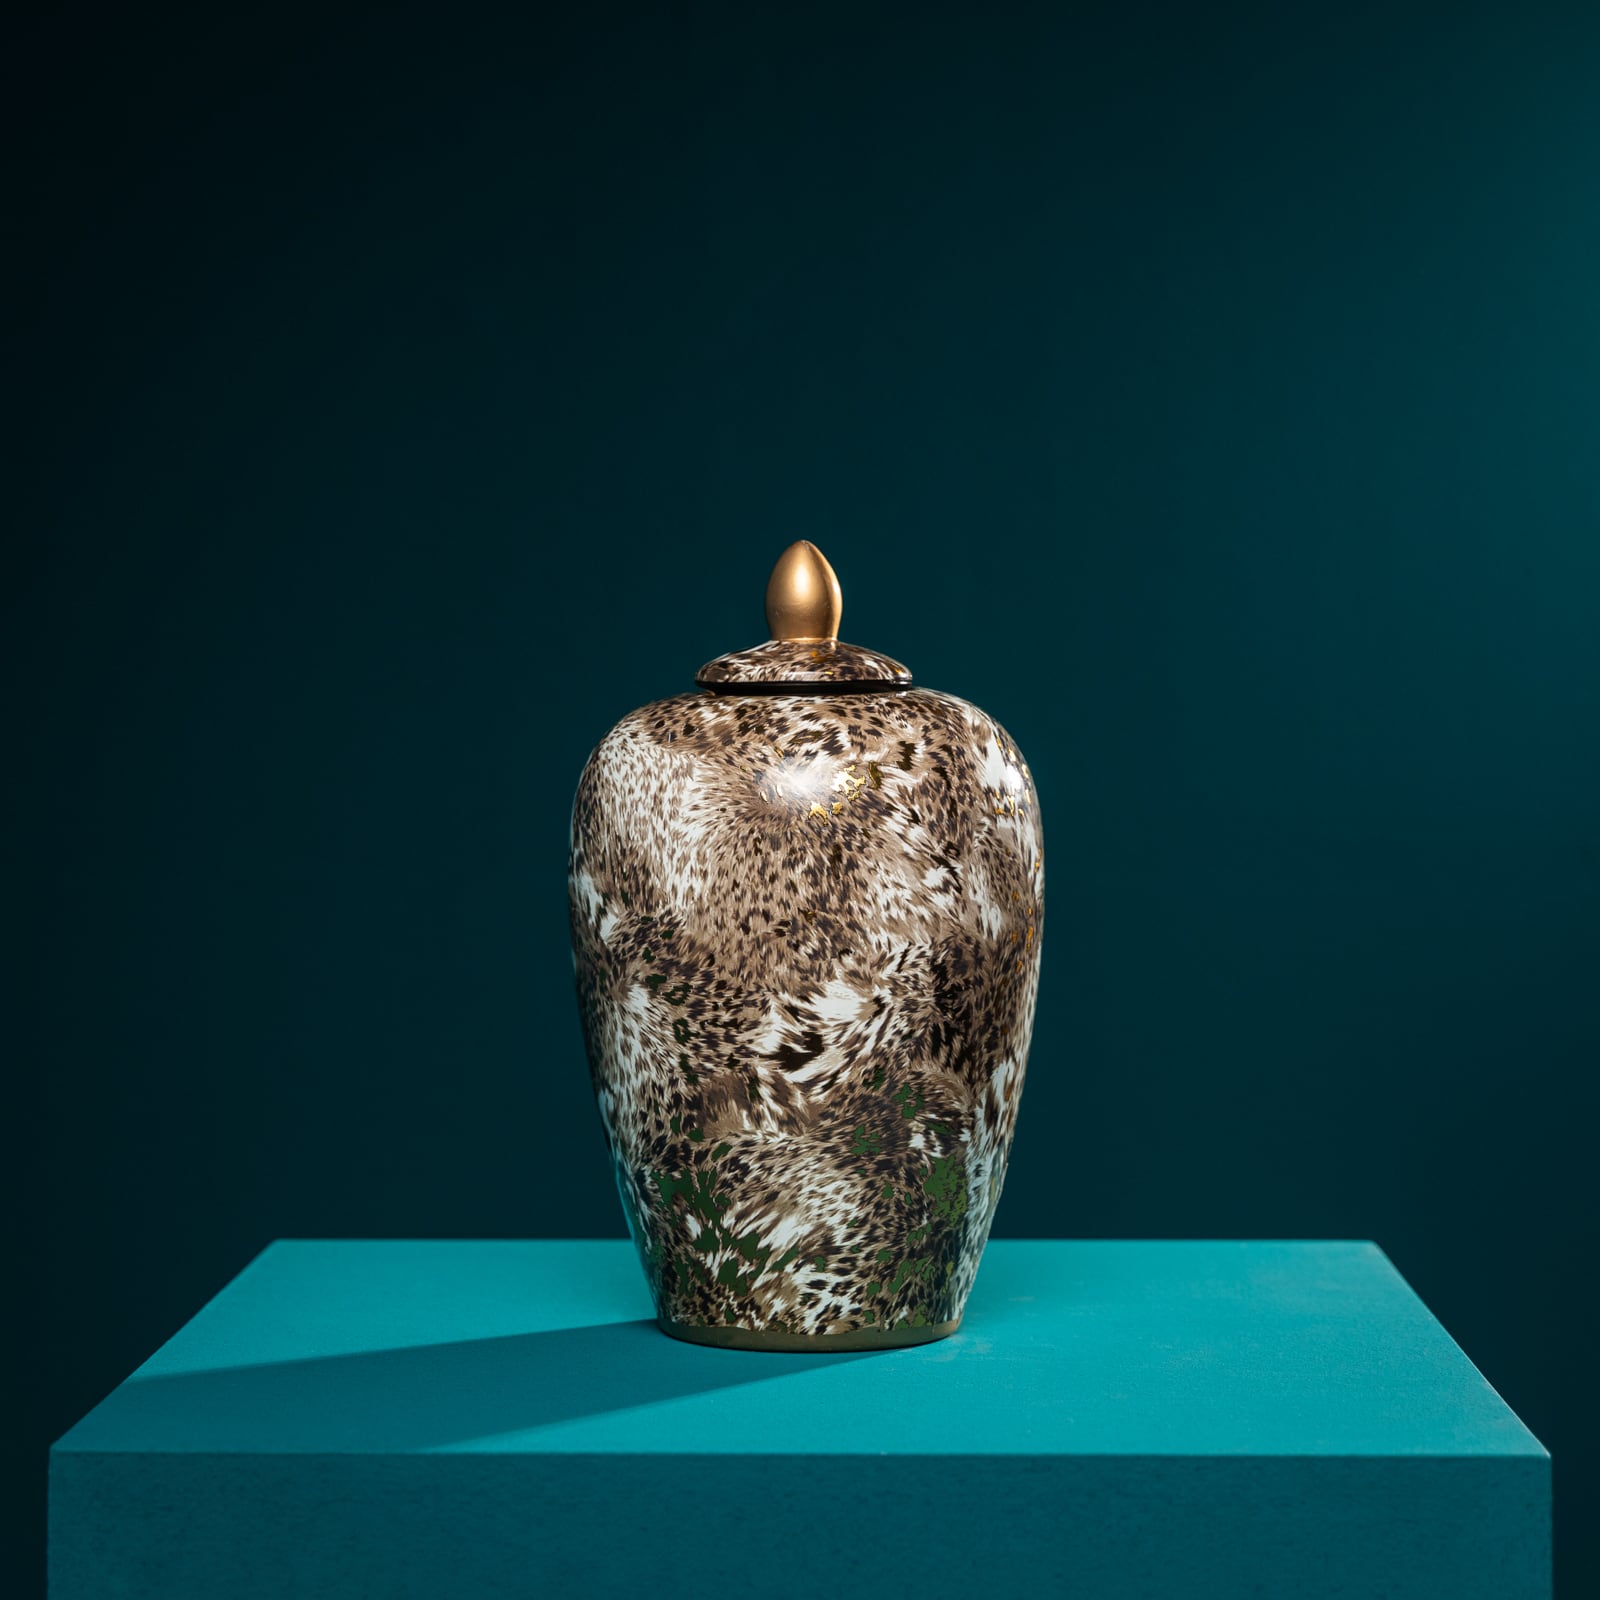 Vase w. lid Leopard, porcelain, 20x20x31 cm 